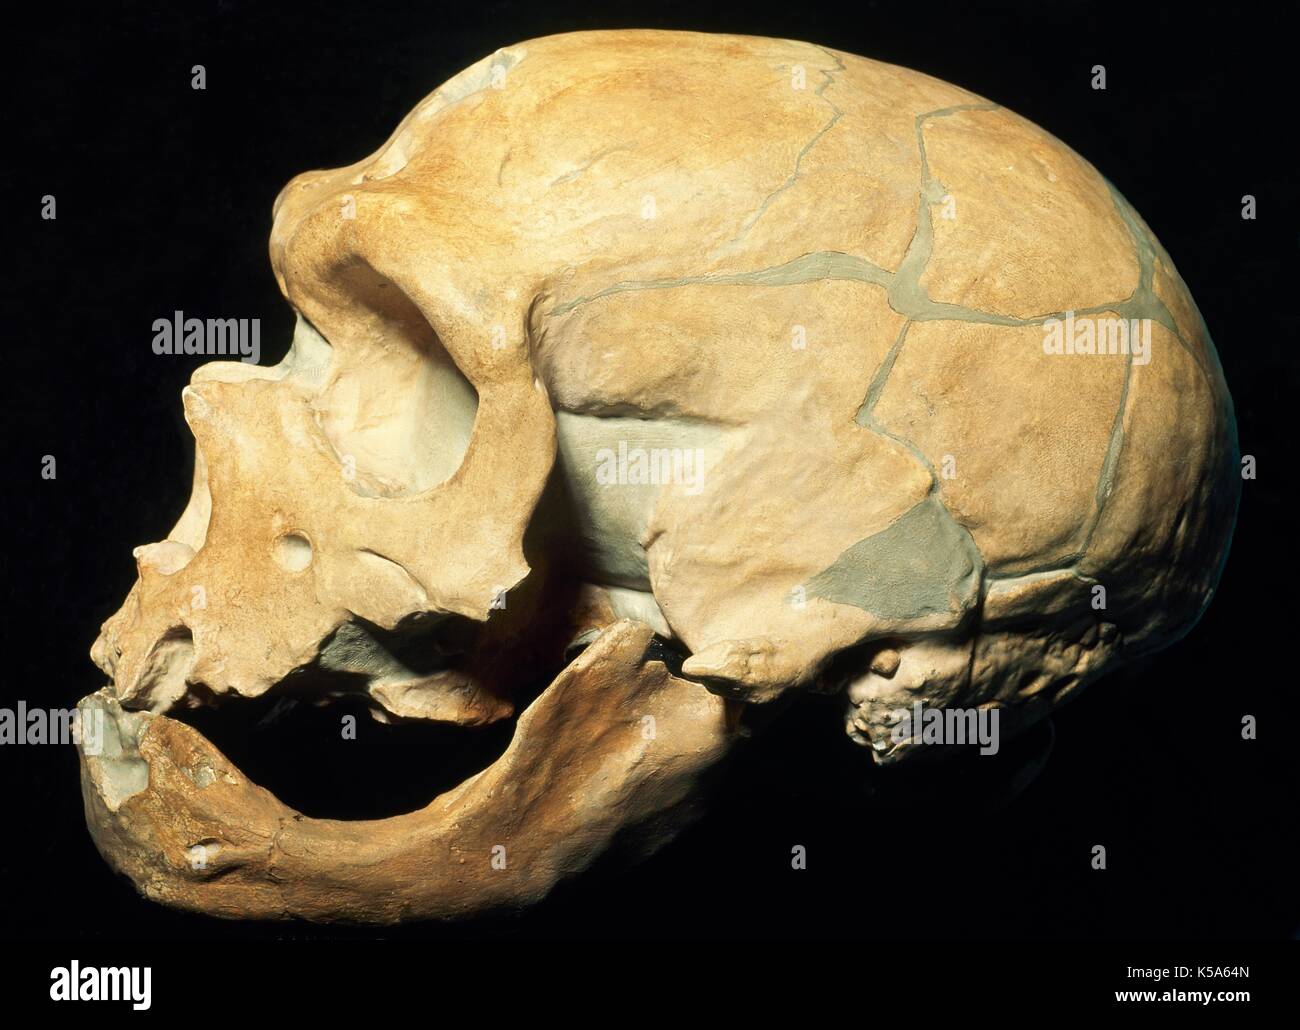 La préhistoire. Paléolithique. Moustérien. Crâne de Néandertal (Homo Sapiens neanderthalensis). Moyen paléolithique (90000 BC BC-35000). Musée d'Histoire Naturelle. Milan (Italie). Banque D'Images